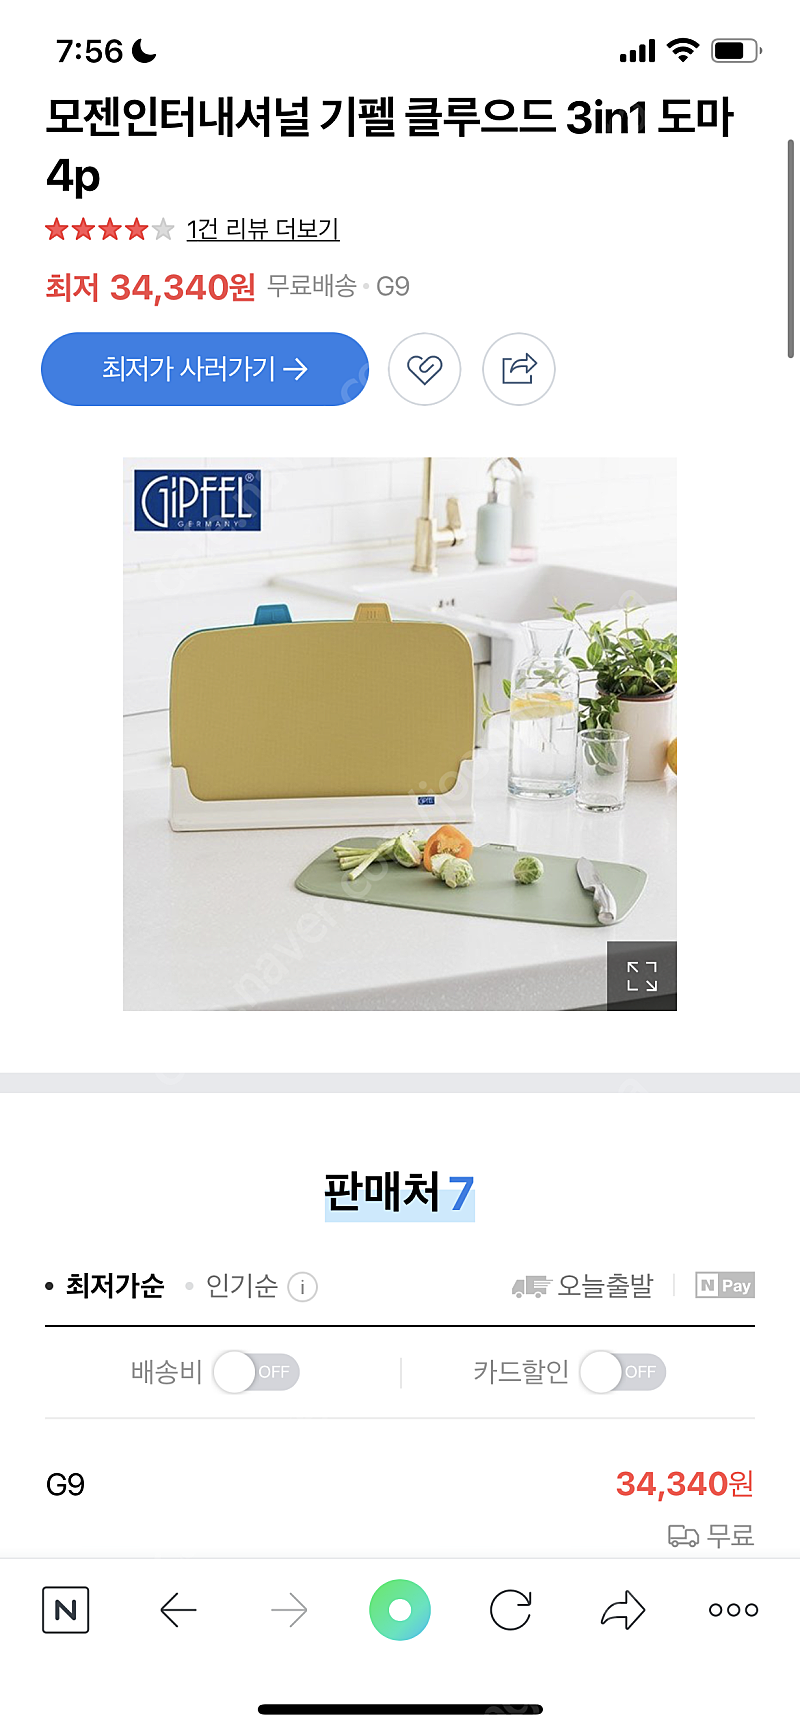 기펠 클라우드 3 in 1 도마 4p 미개봉 새상품 2만원에 팝니다